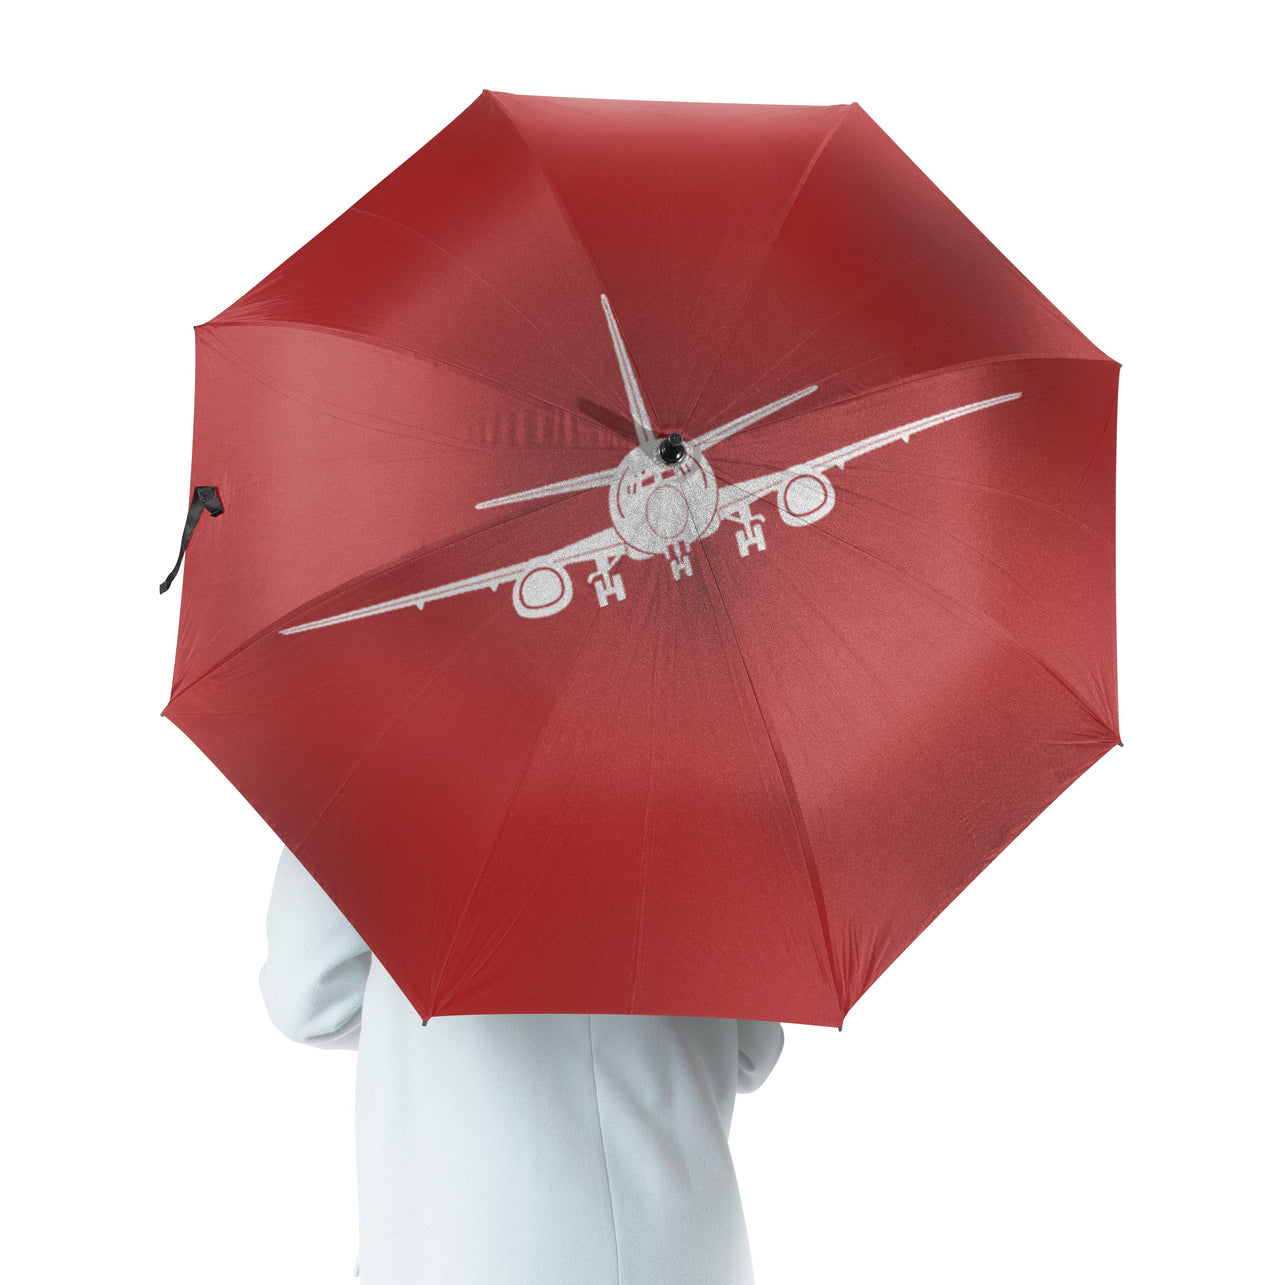 Boeing 737 Silhouette Designed Umbrella